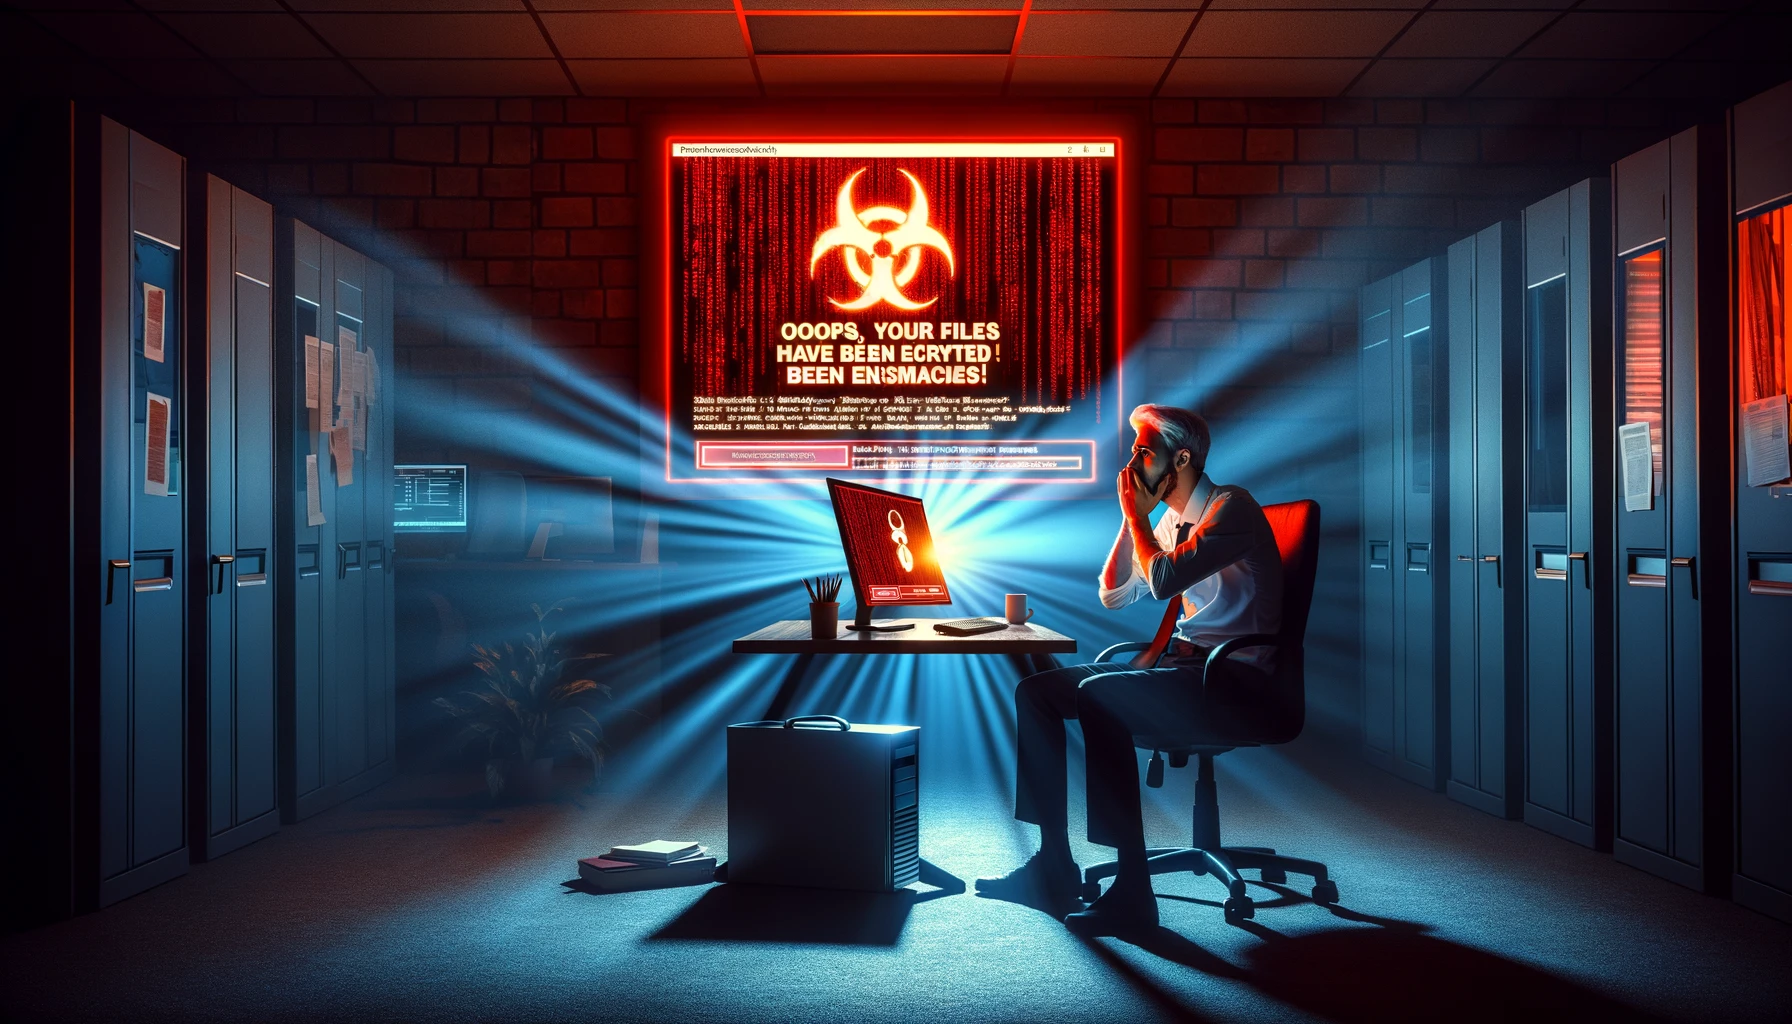 Muestra a un trabajador de oficina frente a un ordenador que muestra un mensaje de advertencia de ransomware en tonos rojos.